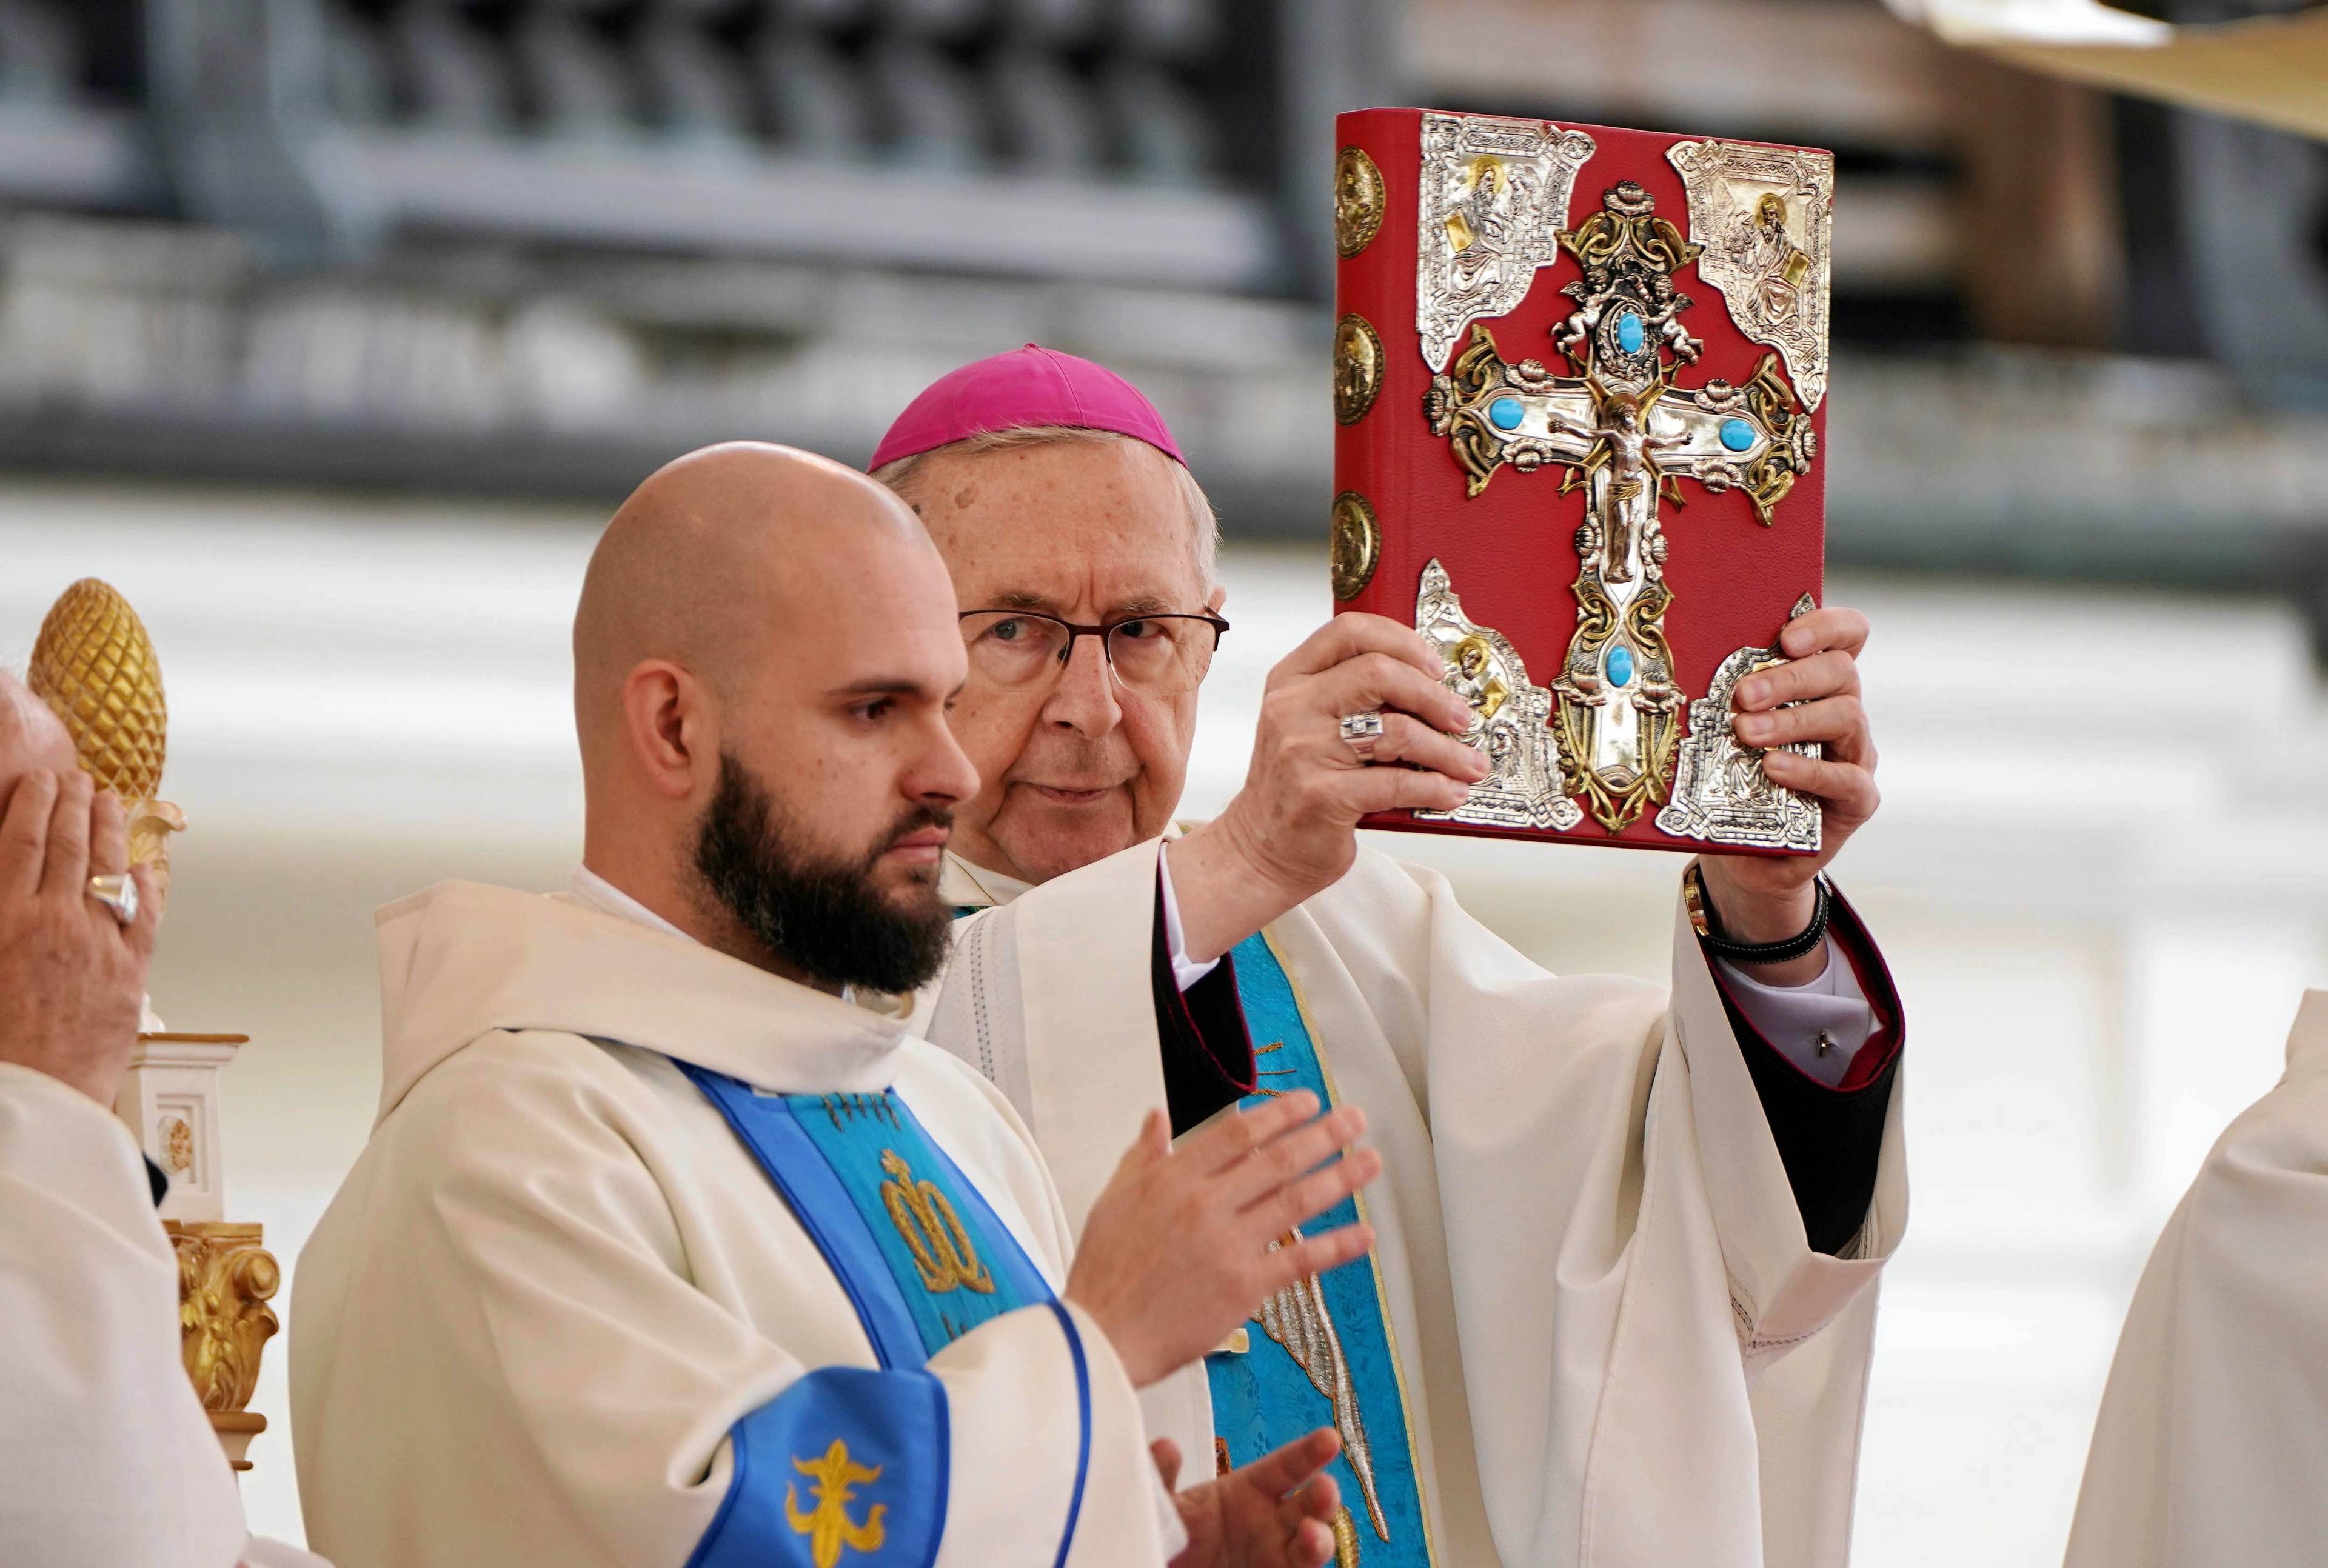 Arcybiskup Stanisław Gądecki trzyma przed sobą bogato zdobioną Biblię ze złotym krzyżem na okładce, obok stoi brodaty zakonnik.